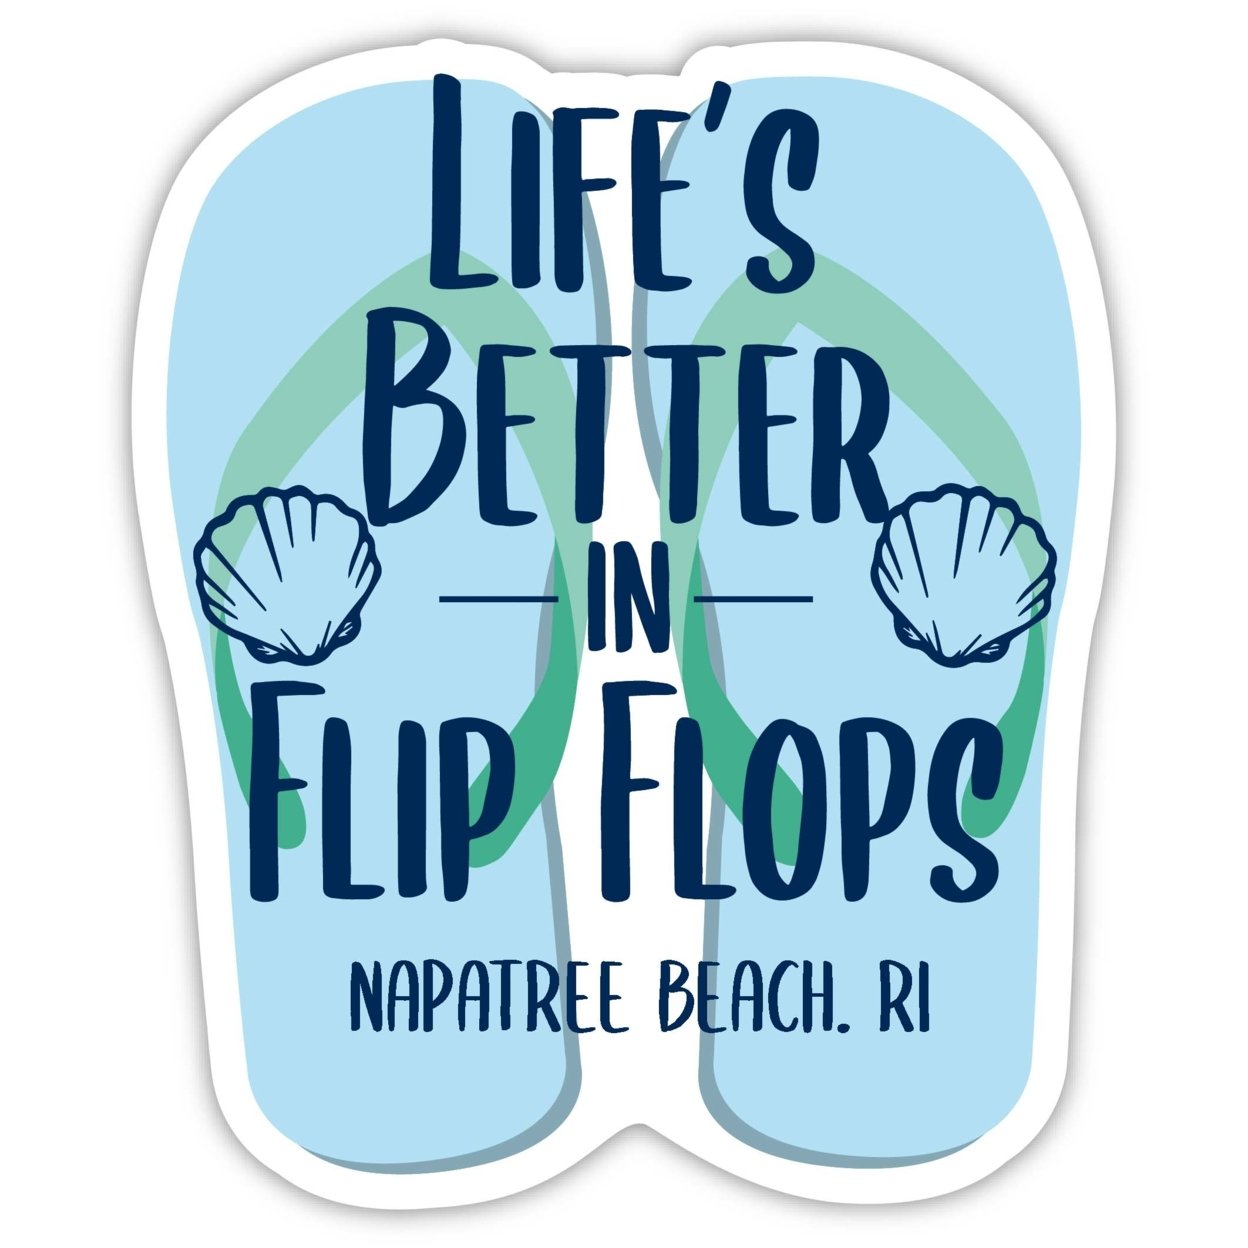 Napatree Beach Rhode Island Souvenir 4 Inch Vinyl Decal Sticker Flip Flop Design